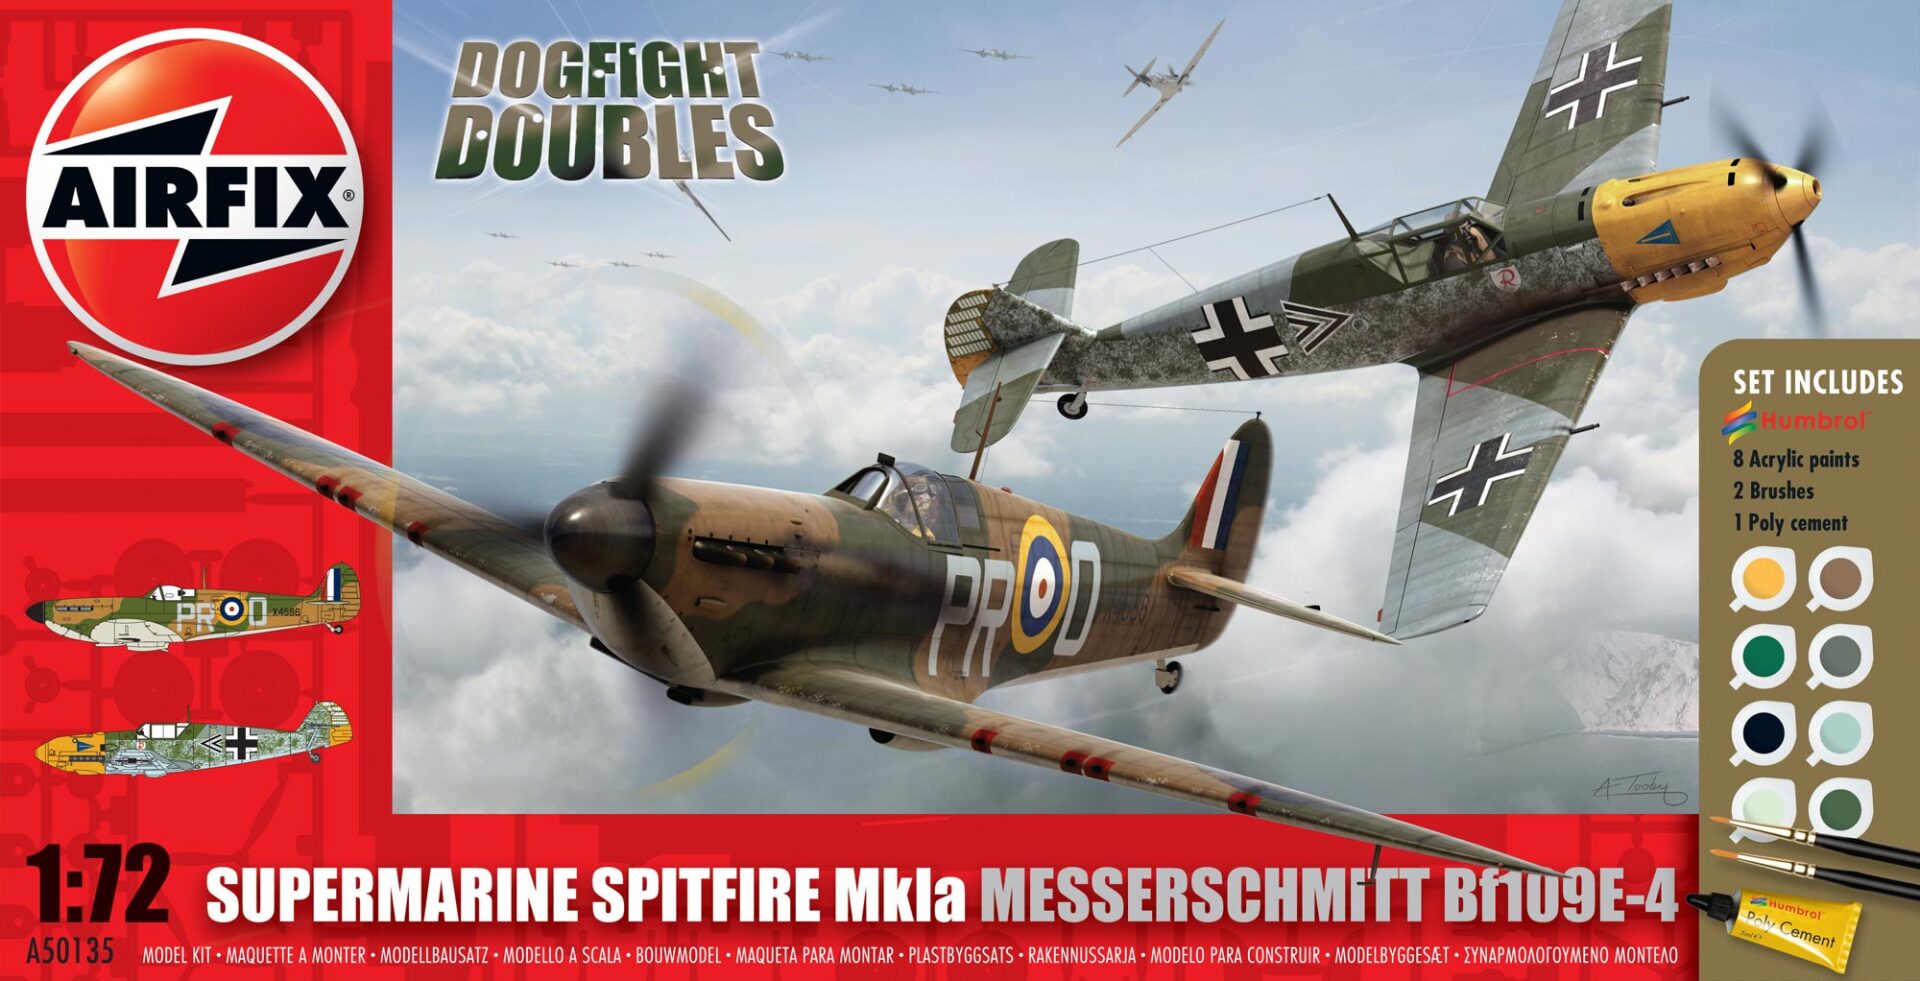 Spitfire Mk.1a & Messerschmitt BF109E-4 Dogfight Double